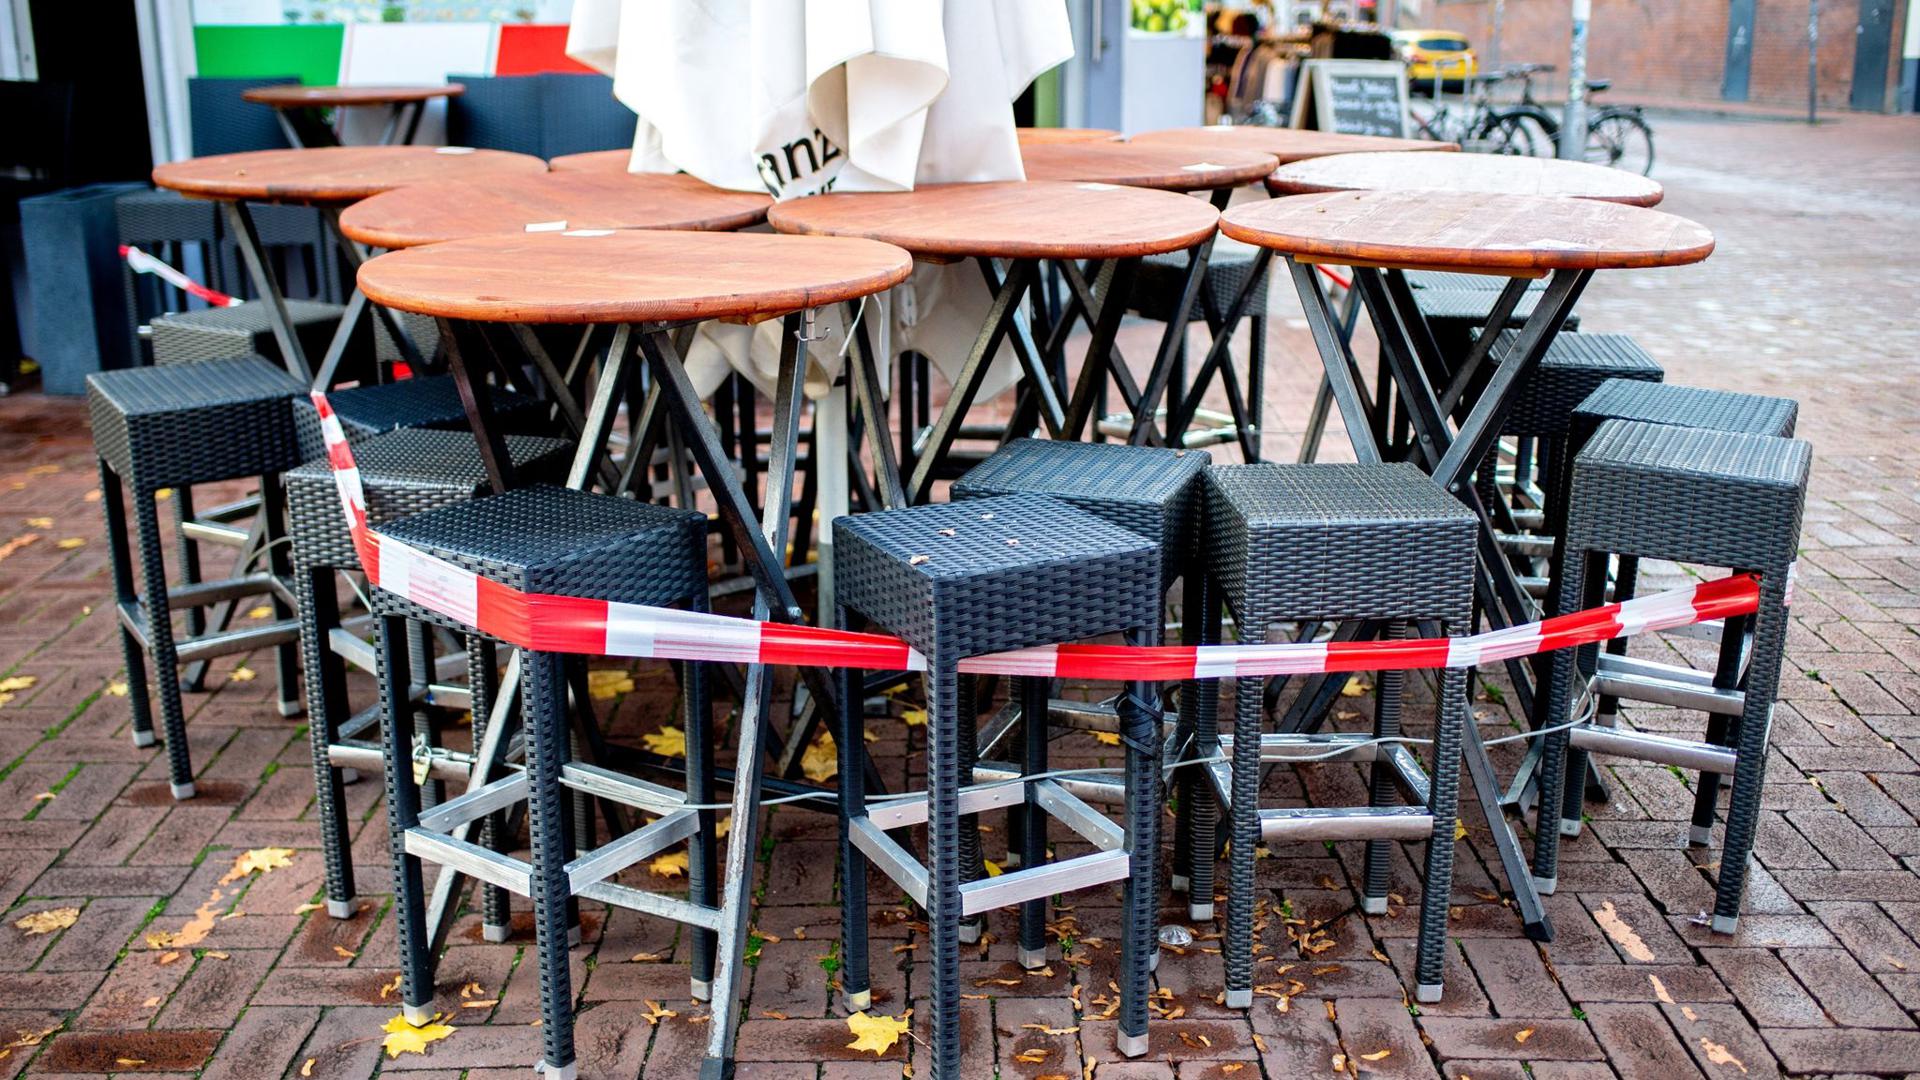 Tische und Stühle stehen abgesperrt vor einer Pizzeria.